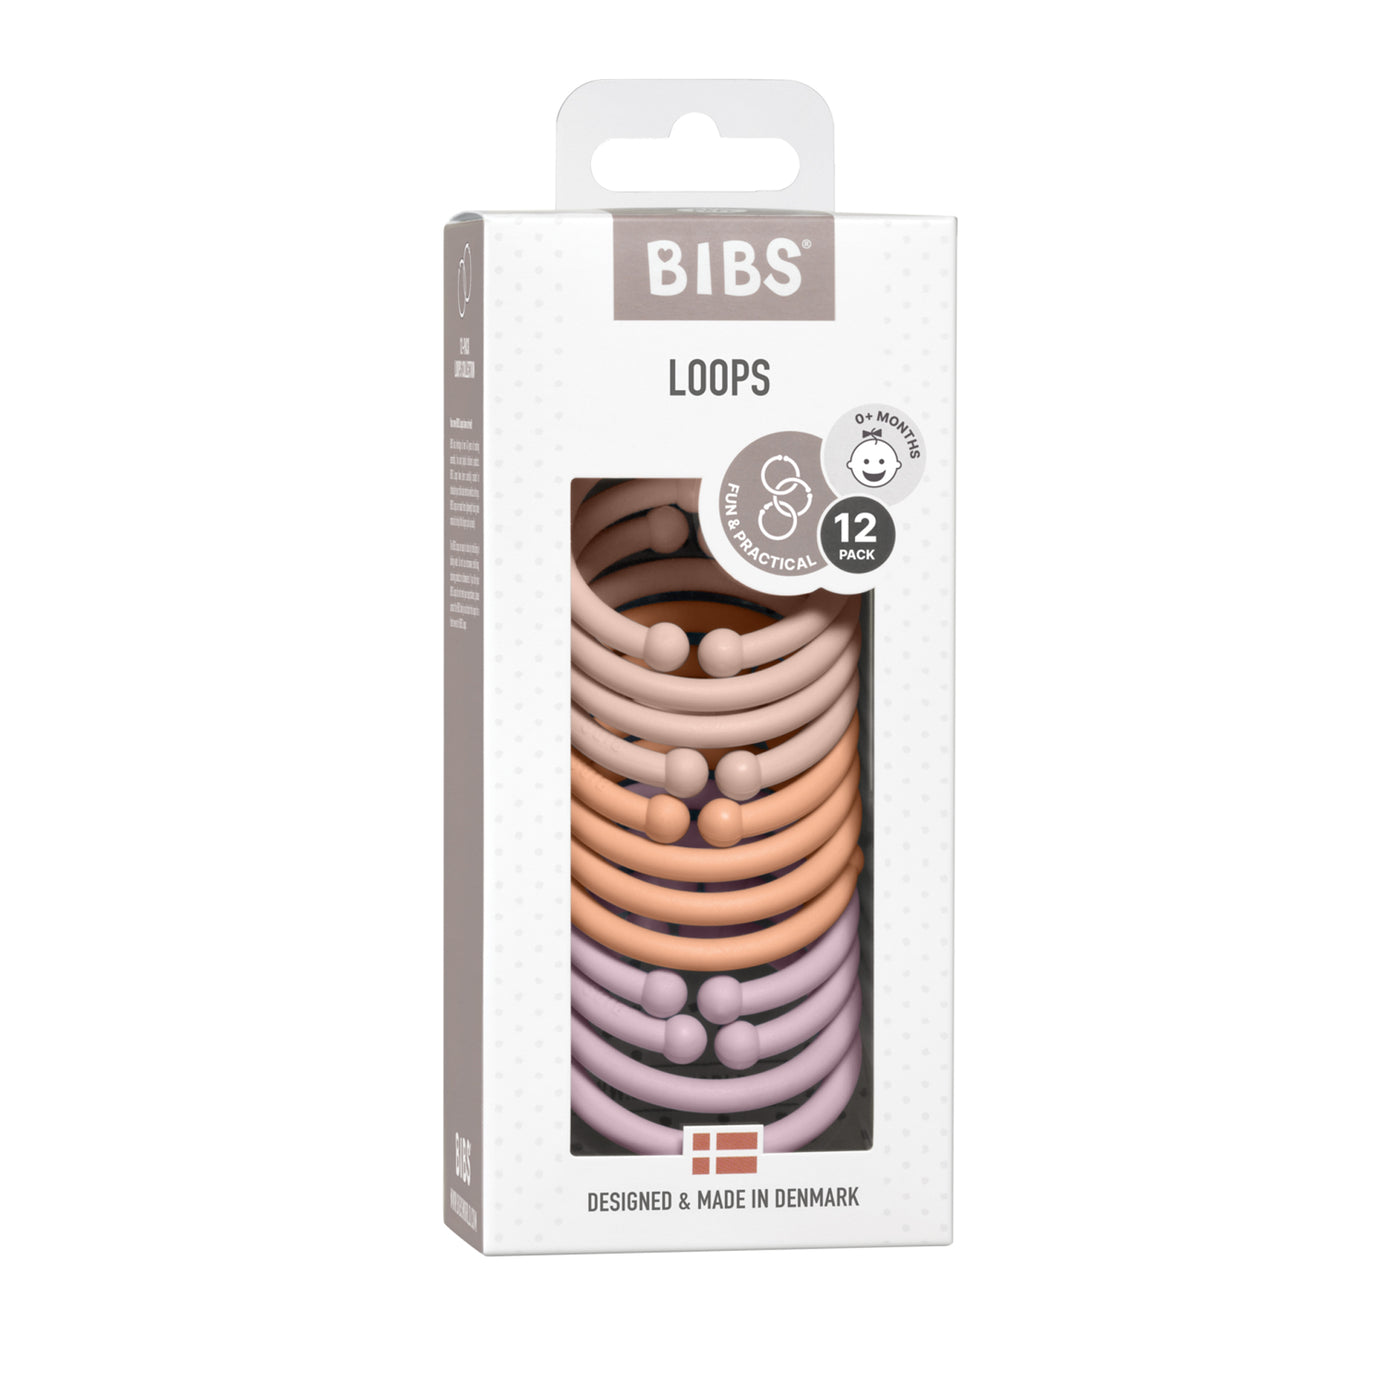 BIBS Loops 12pk - Blush/Peach/Dusky Lilac